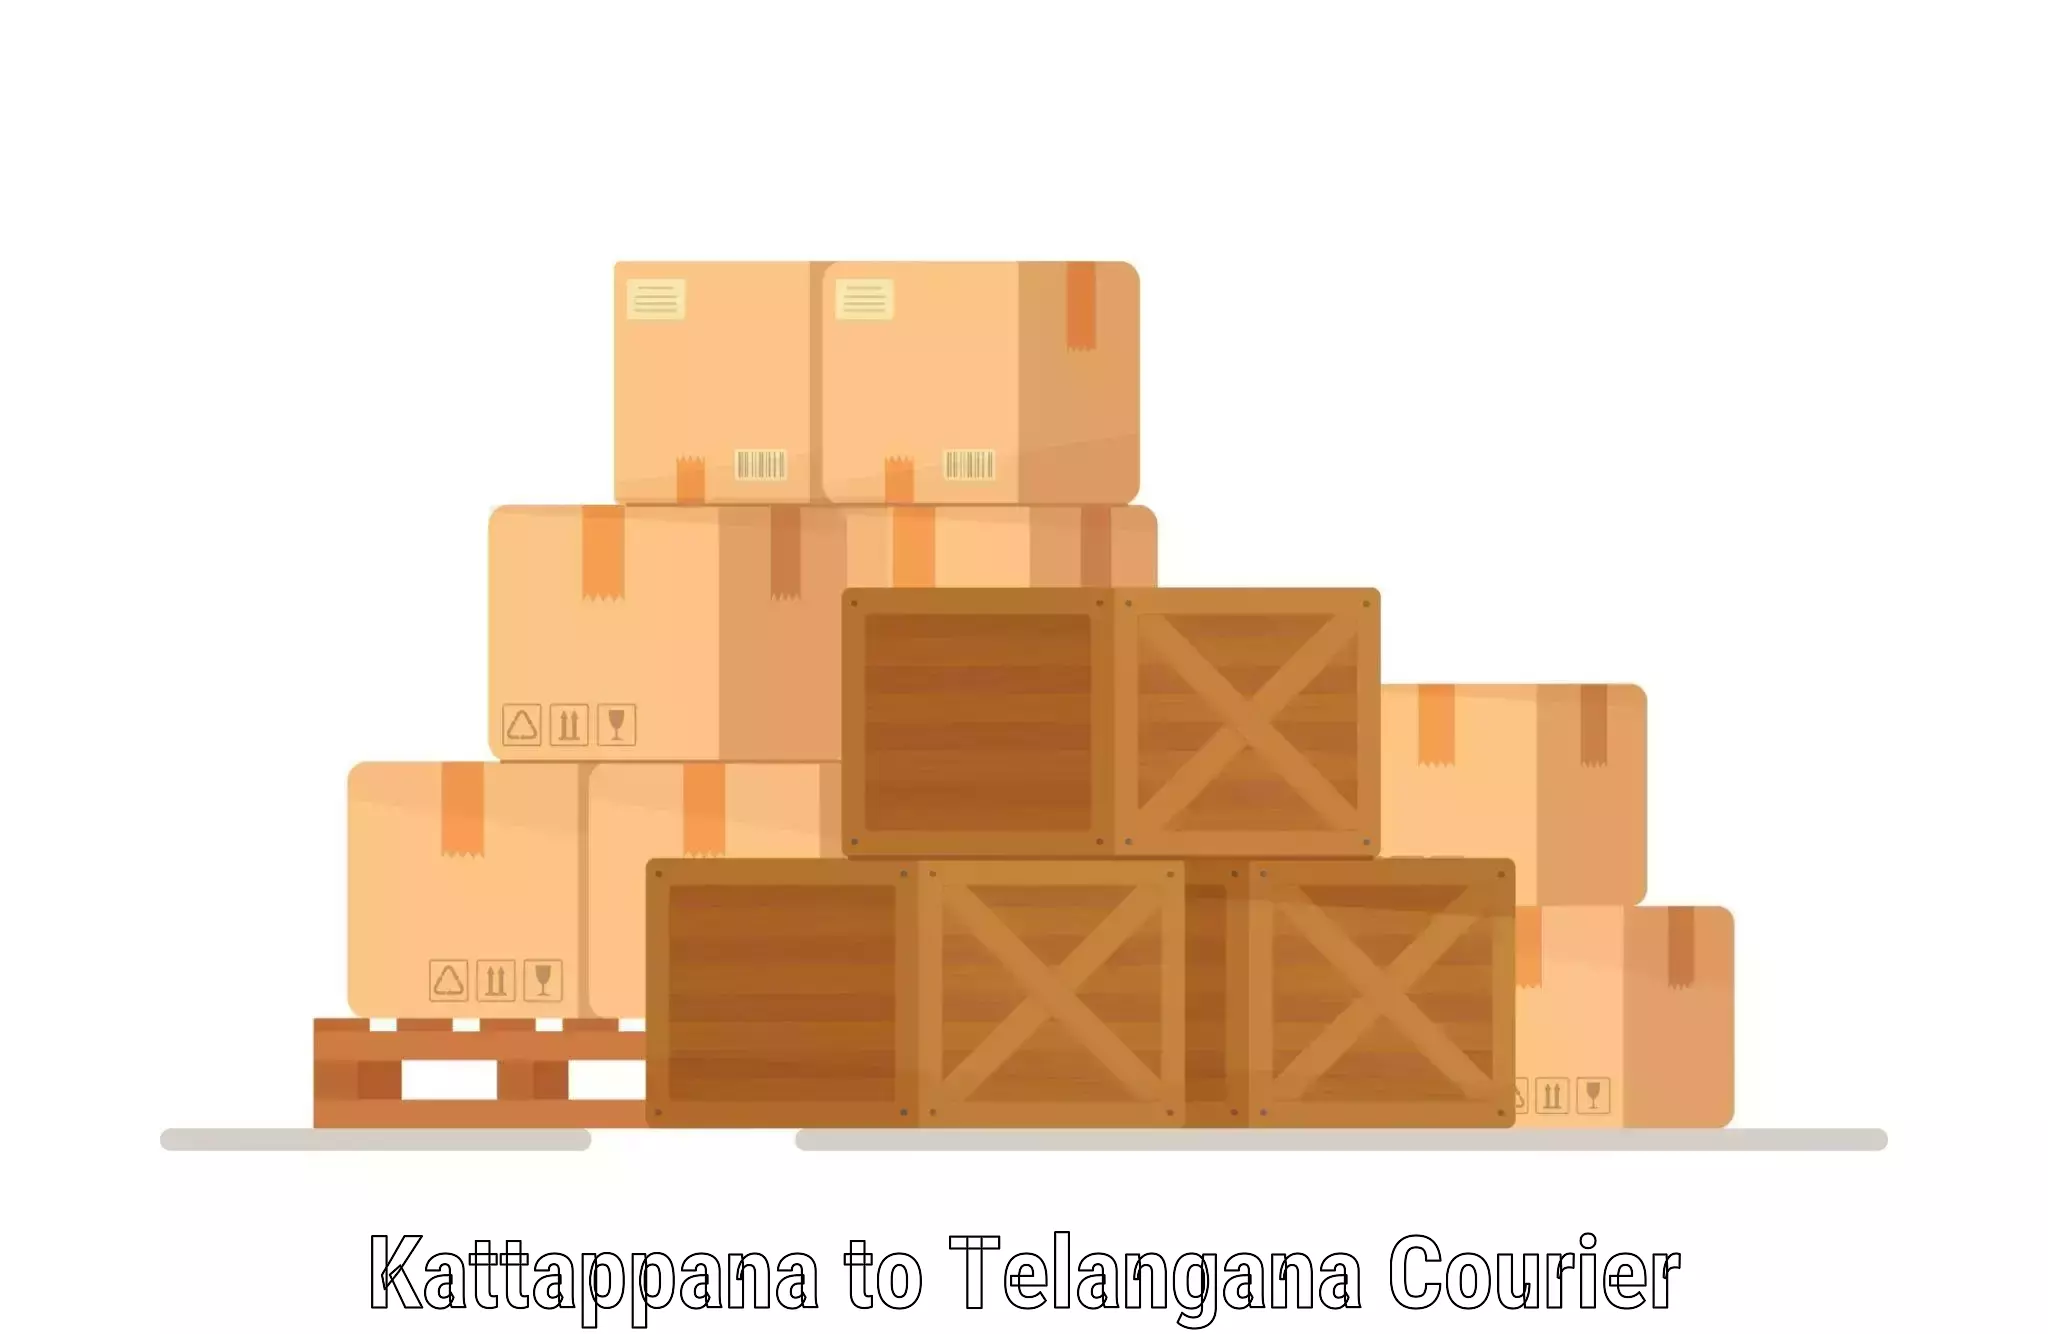 Efficient freight service Kattappana to Koratla